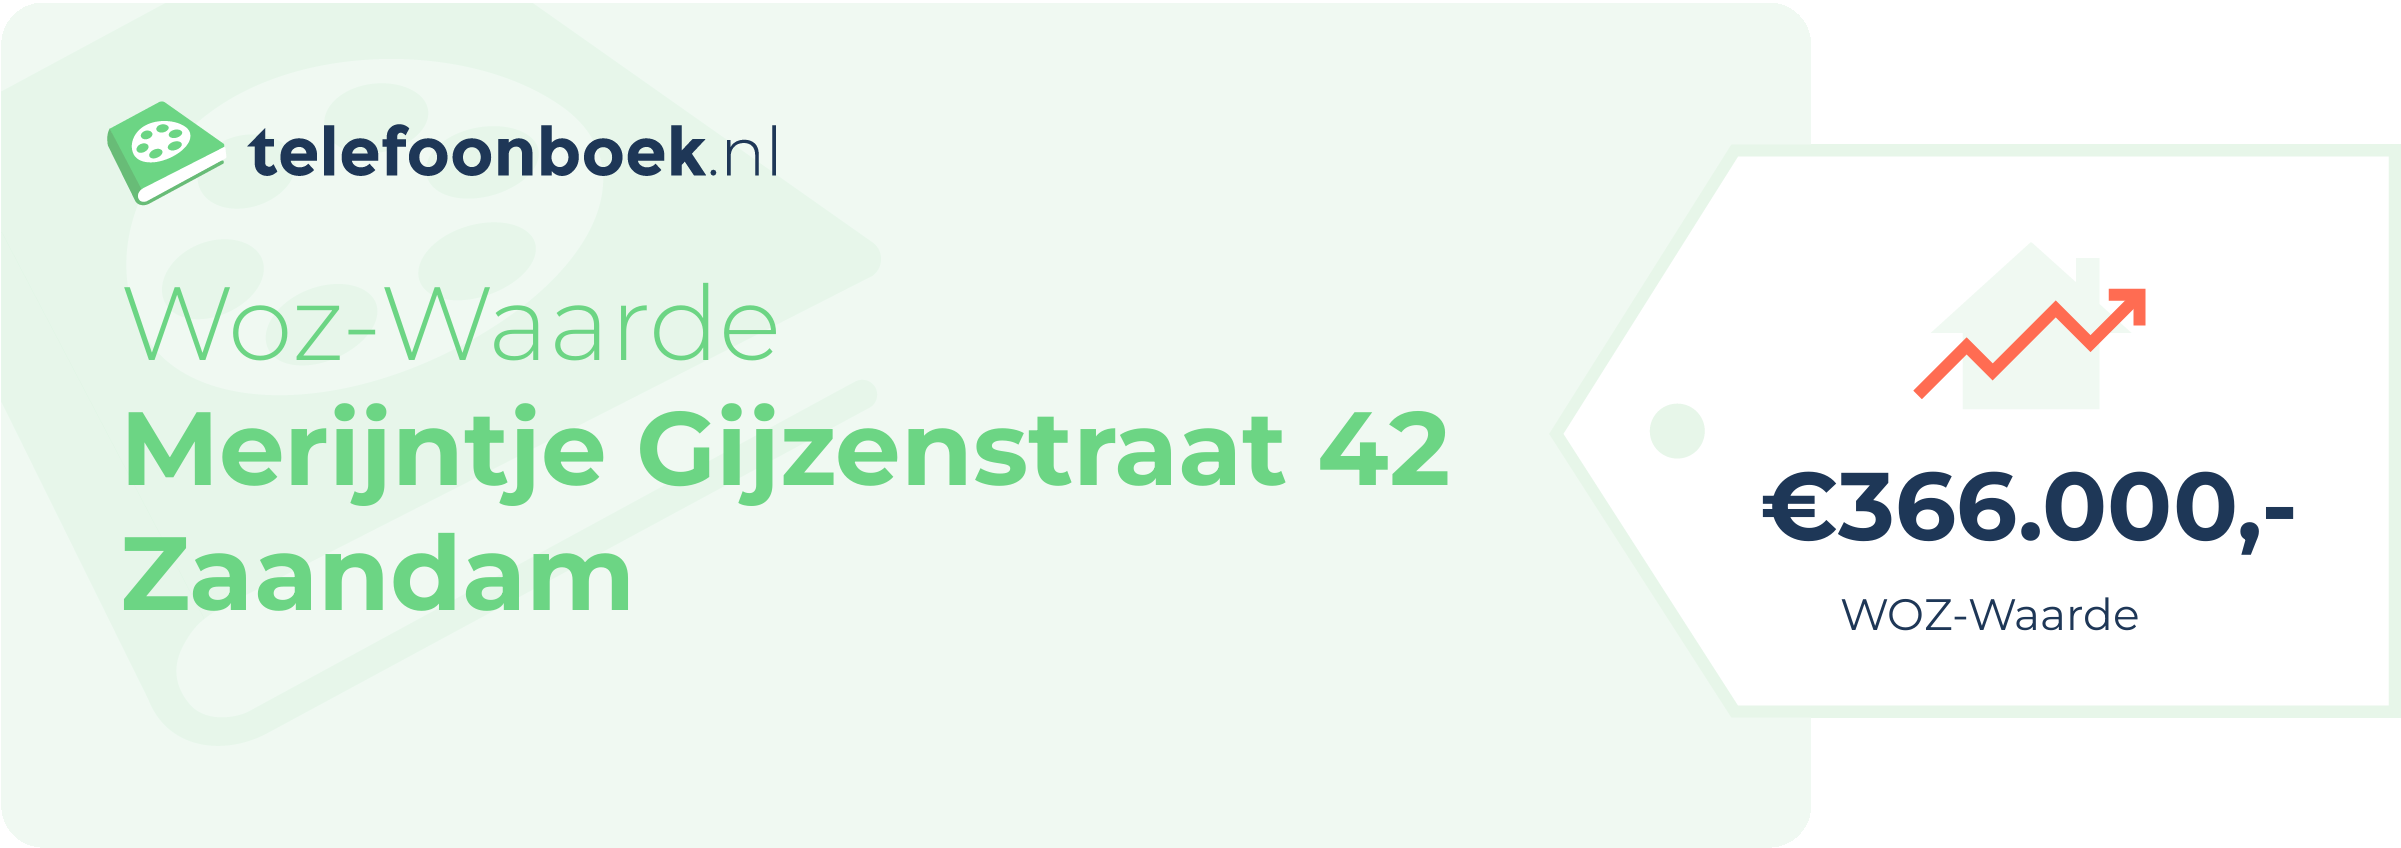 WOZ-waarde Merijntje Gijzenstraat 42 Zaandam